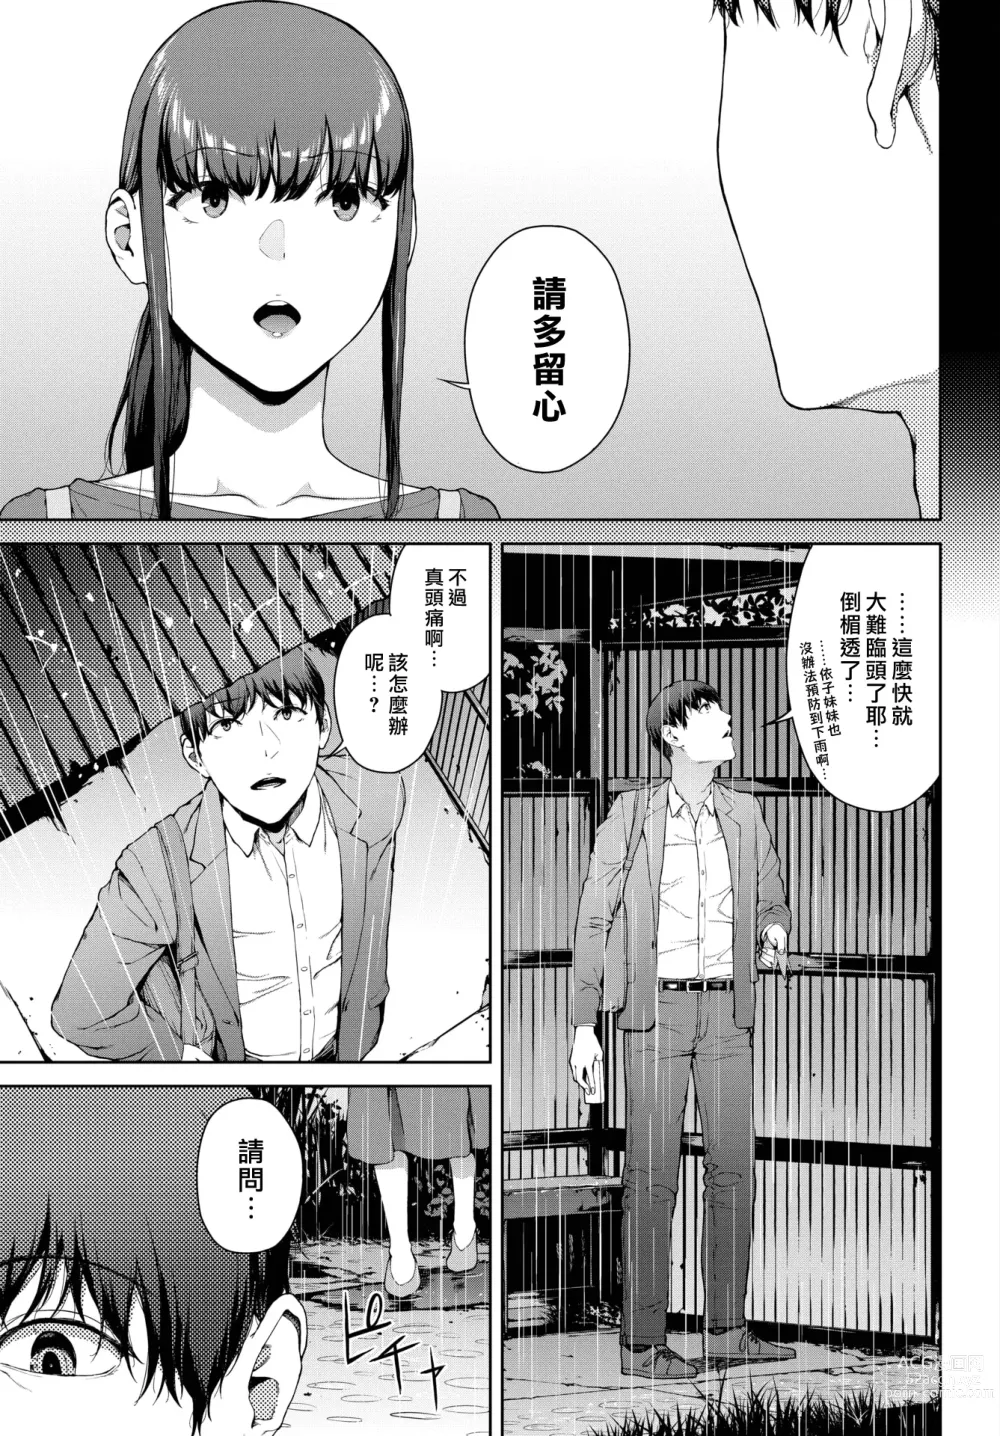 Page 3 of manga 躲雨